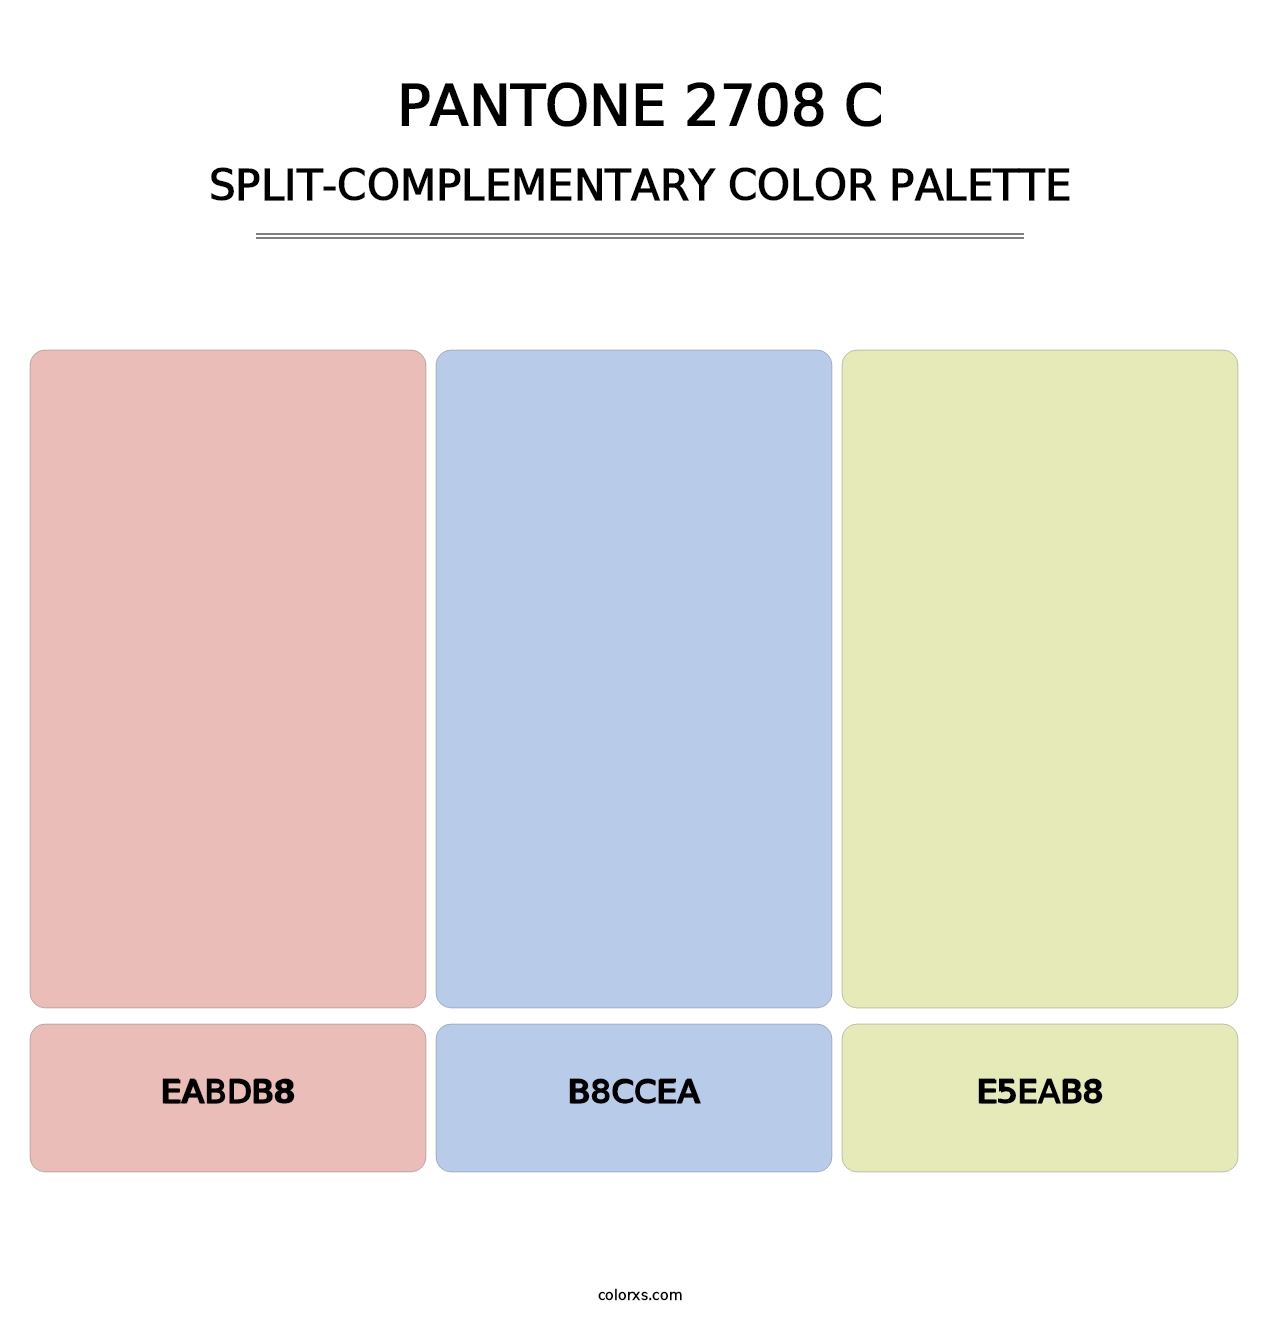 PANTONE 2708 C - Split-Complementary Color Palette